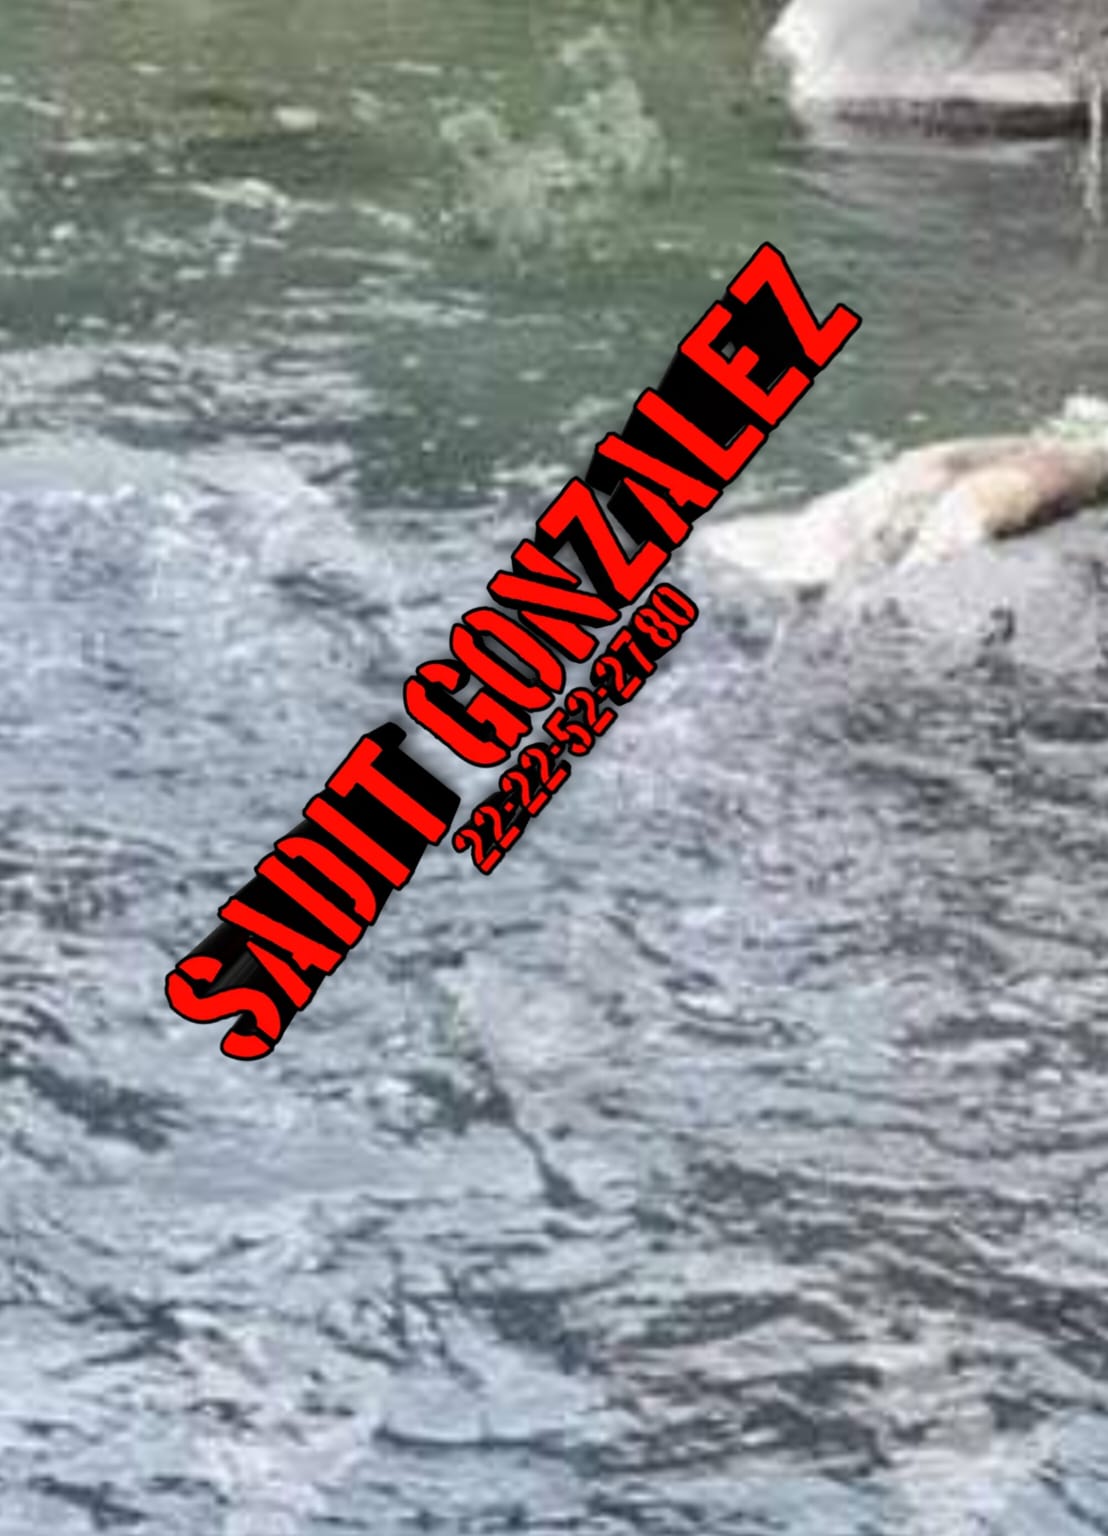 Padre e hijo mueren ahogados en río de Petlalcingo